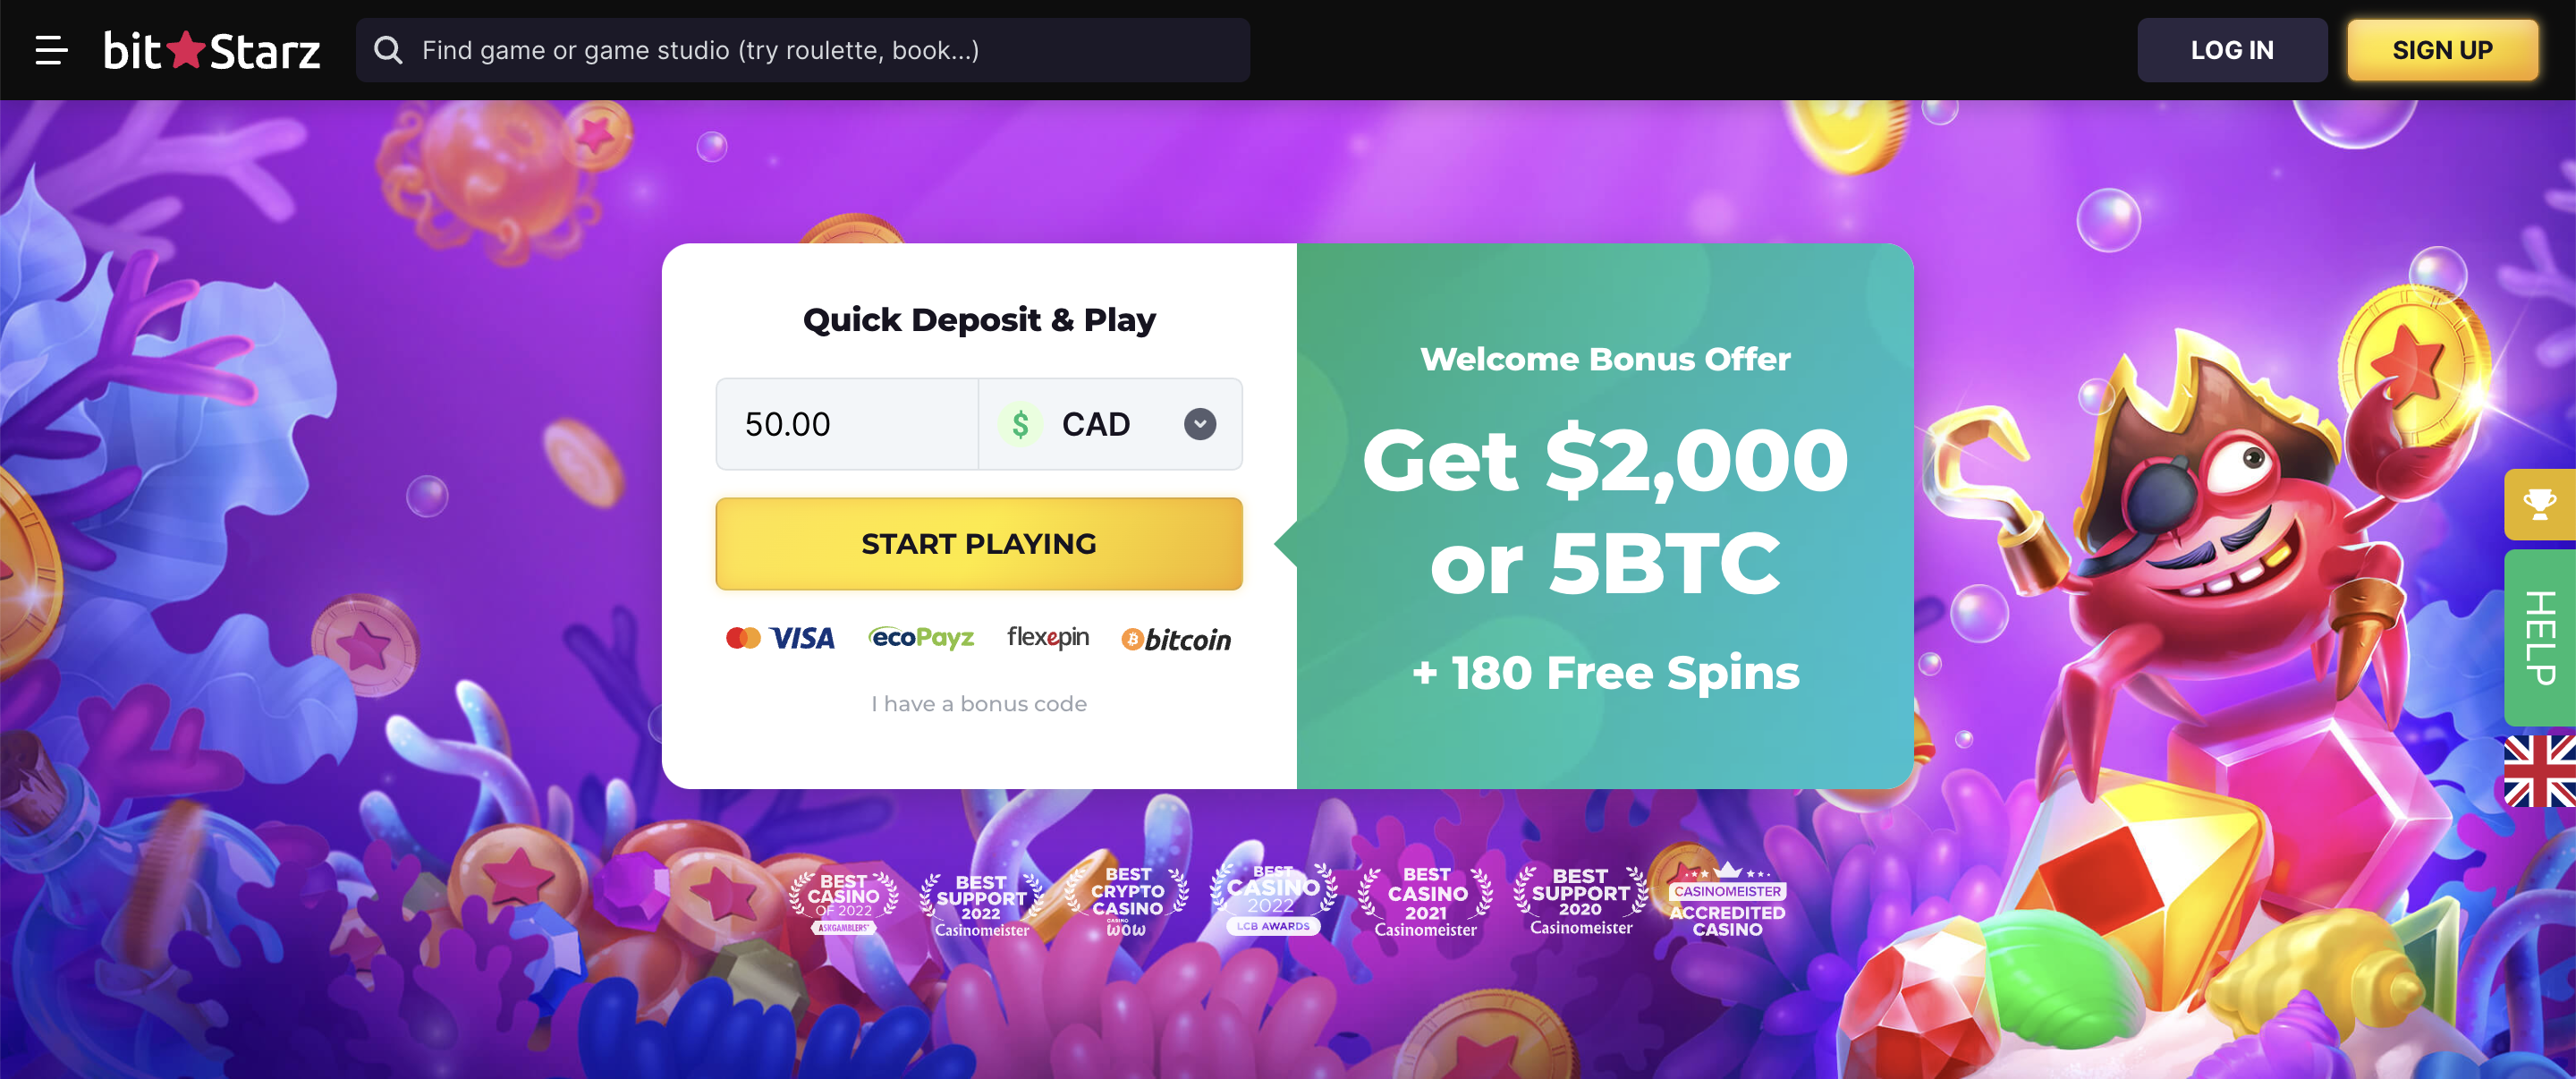 BitStarz Casino website